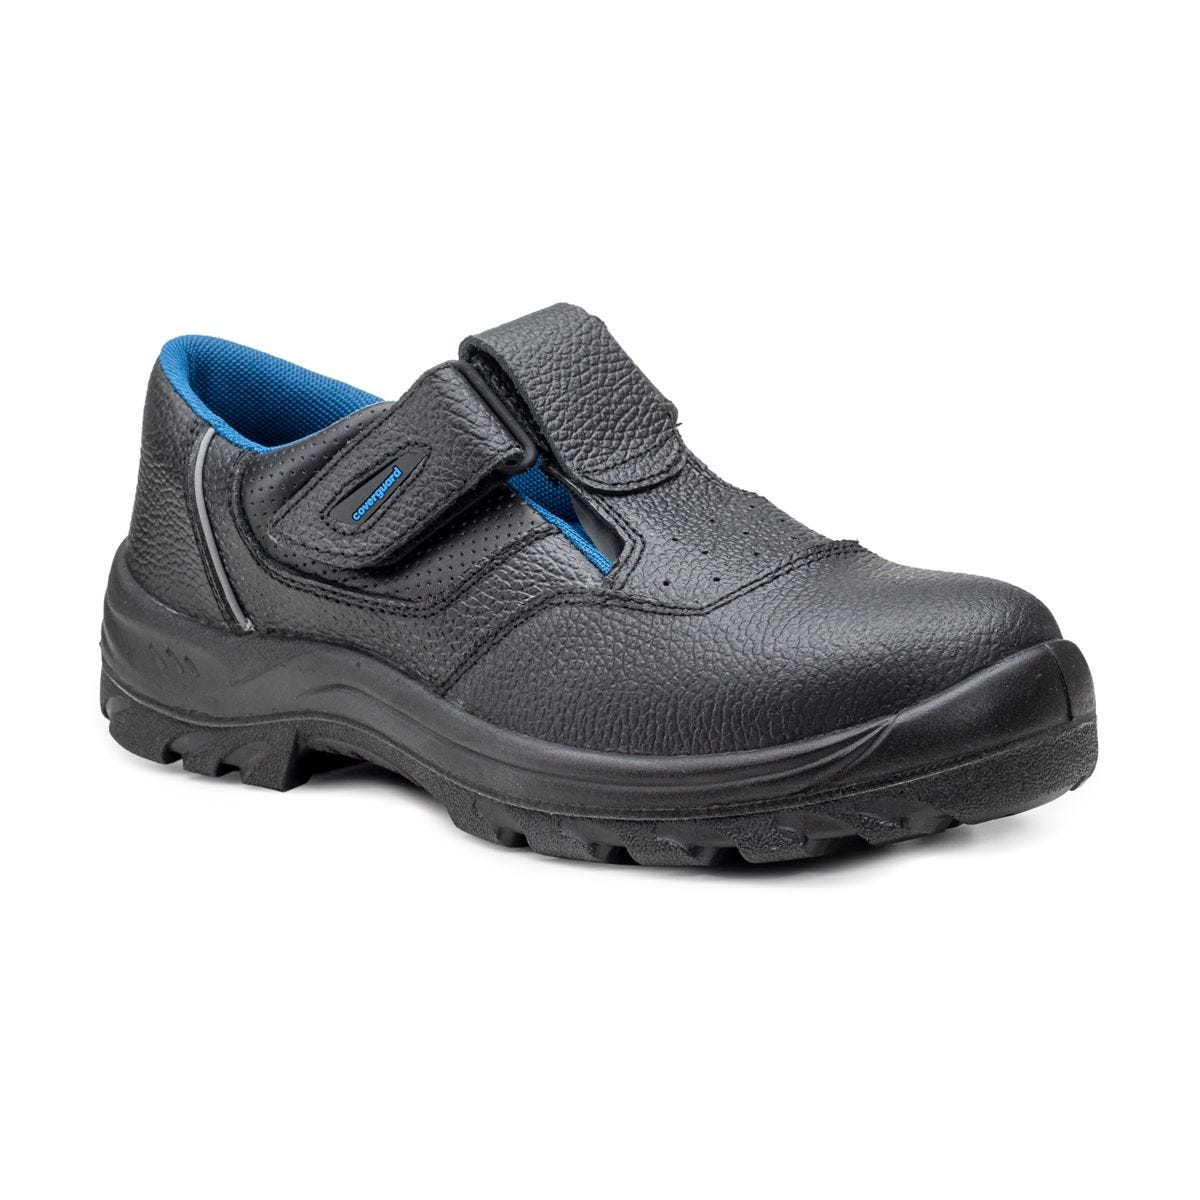 Sandales de sécurité basses Bosco II noir - Coverguard - Taille 35 0